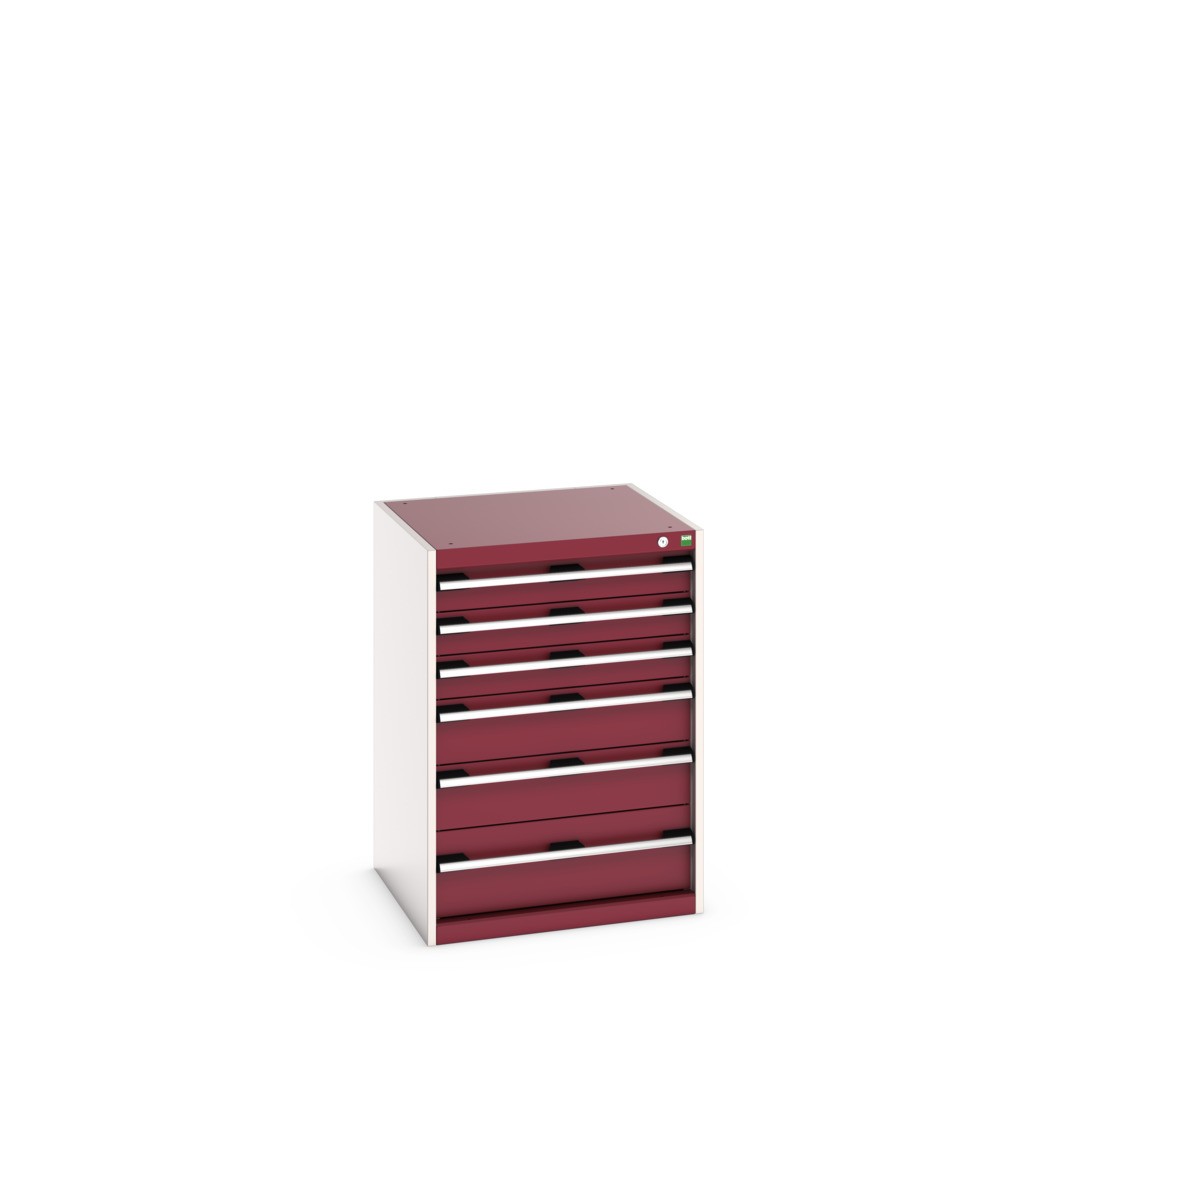 40019049.24V - cubio drawer cabinet